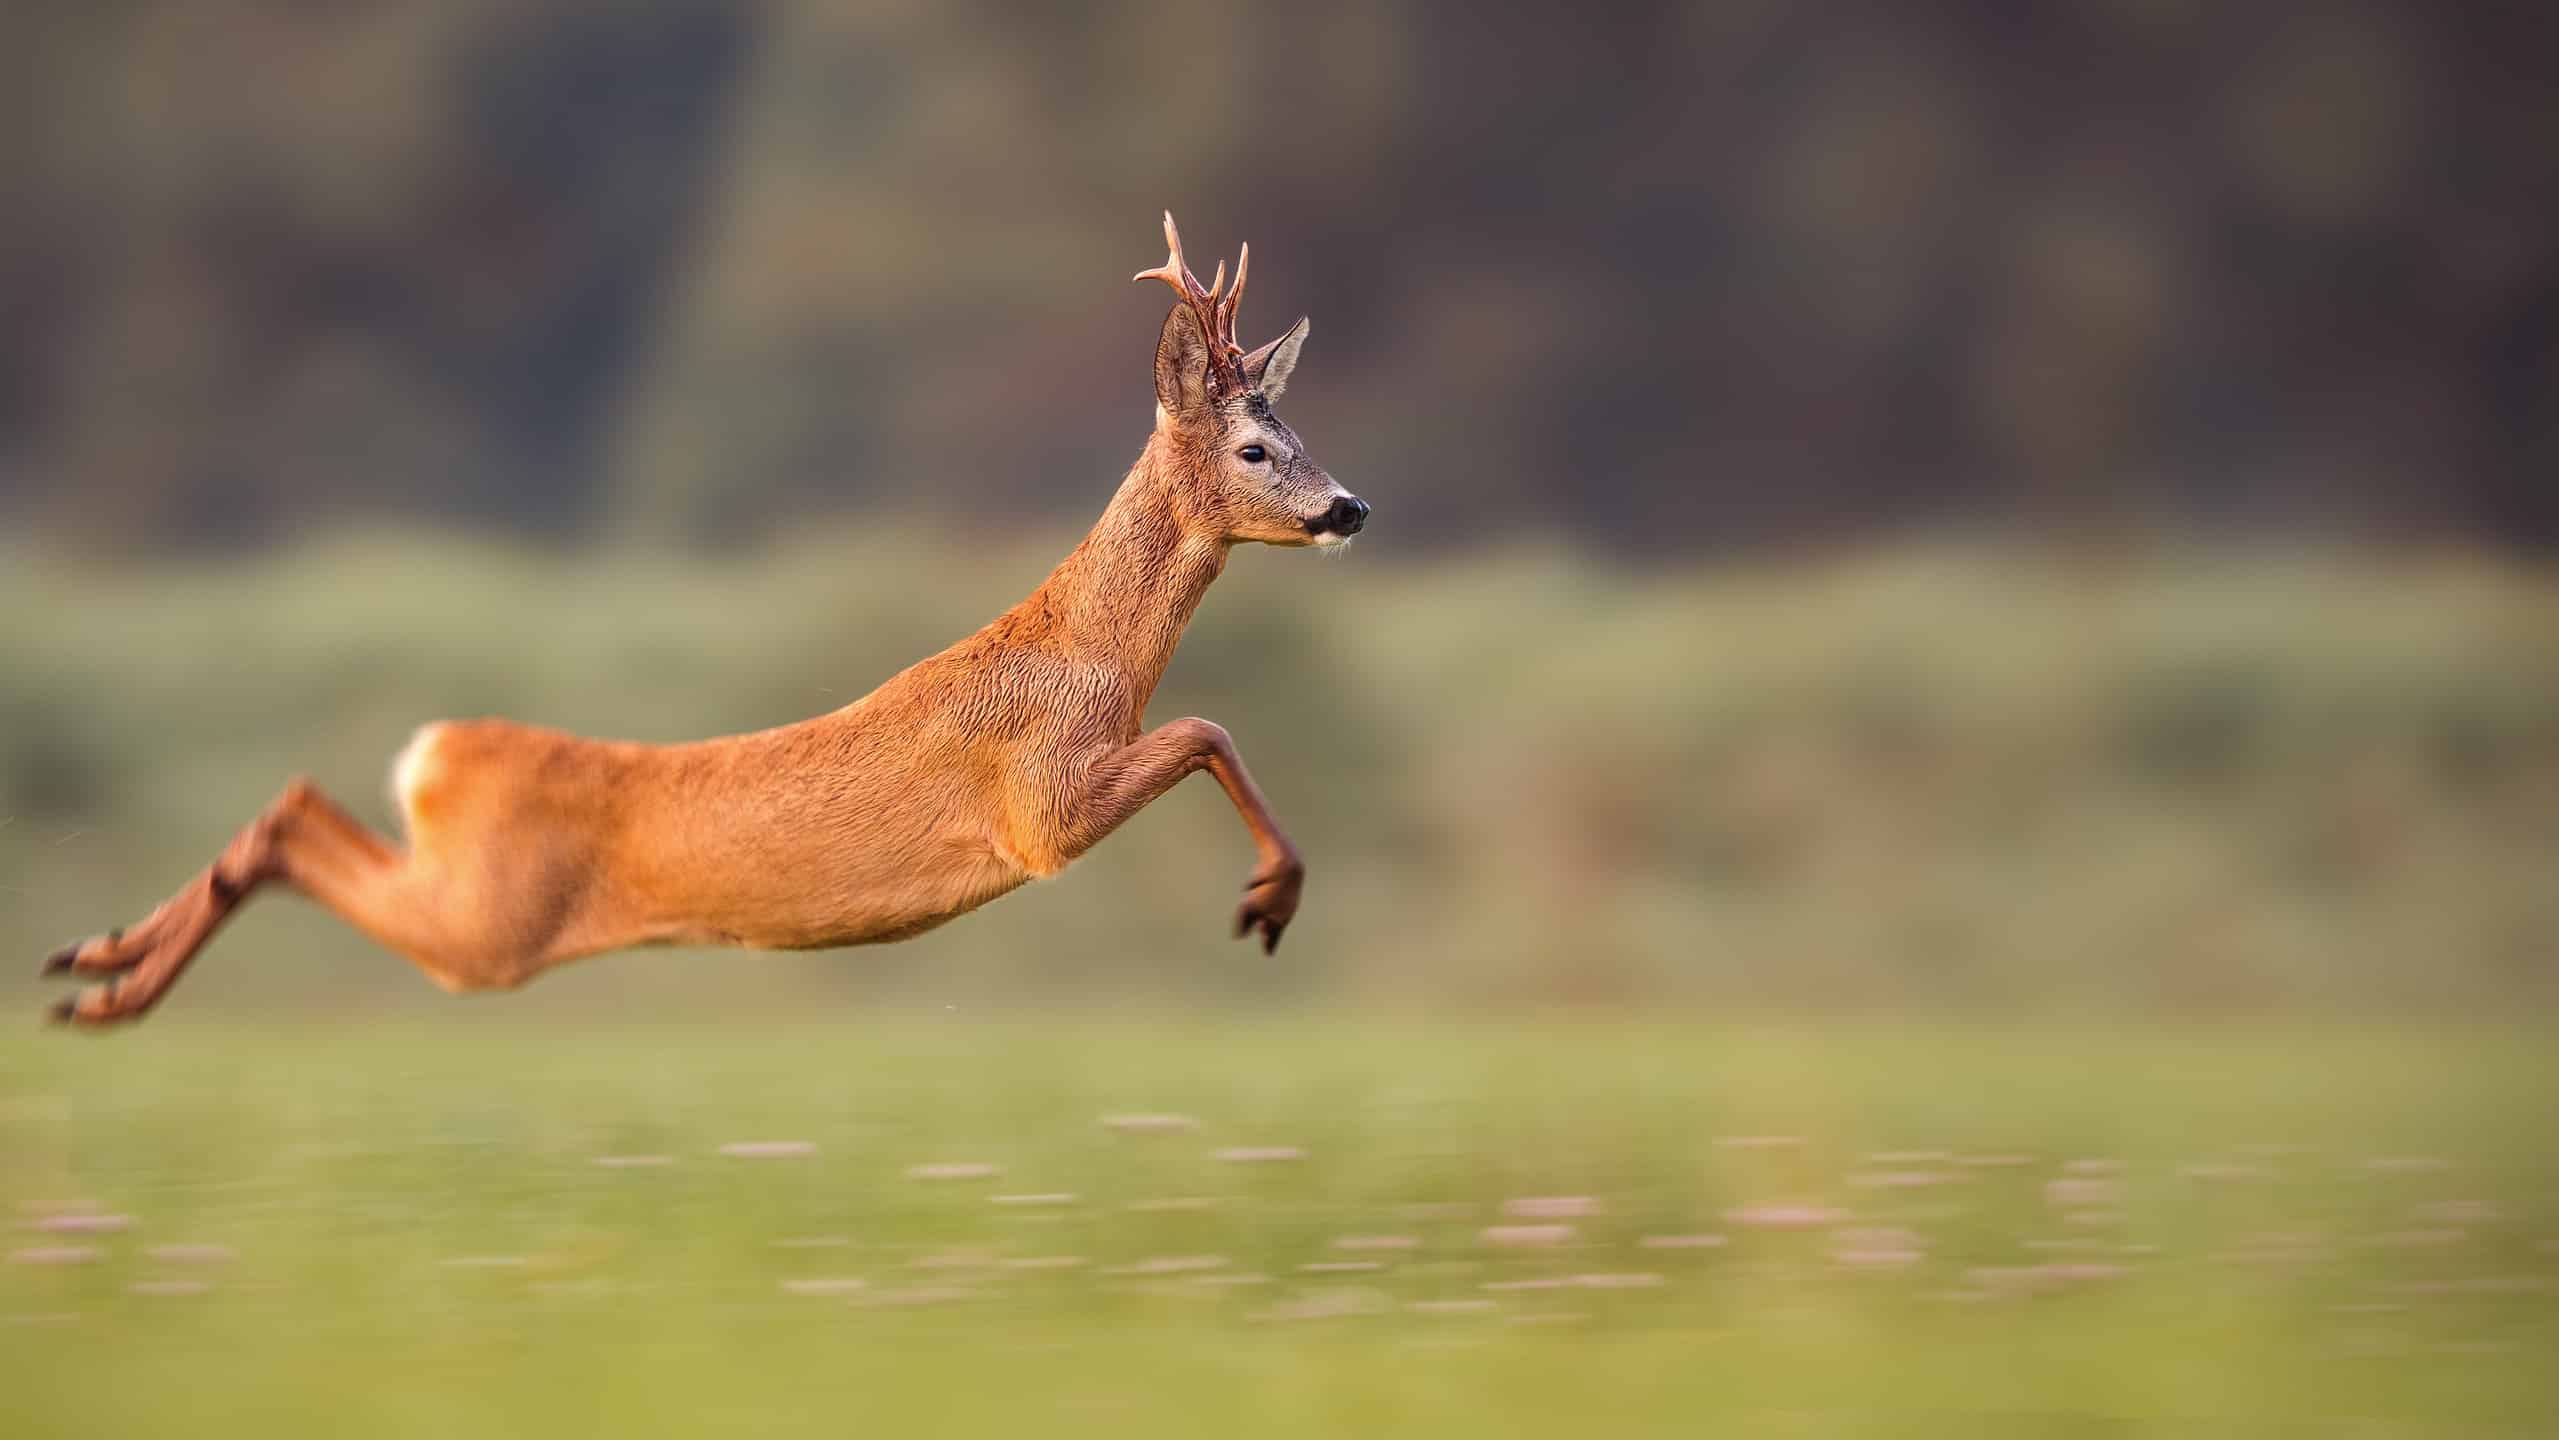 A deer sprints across a field